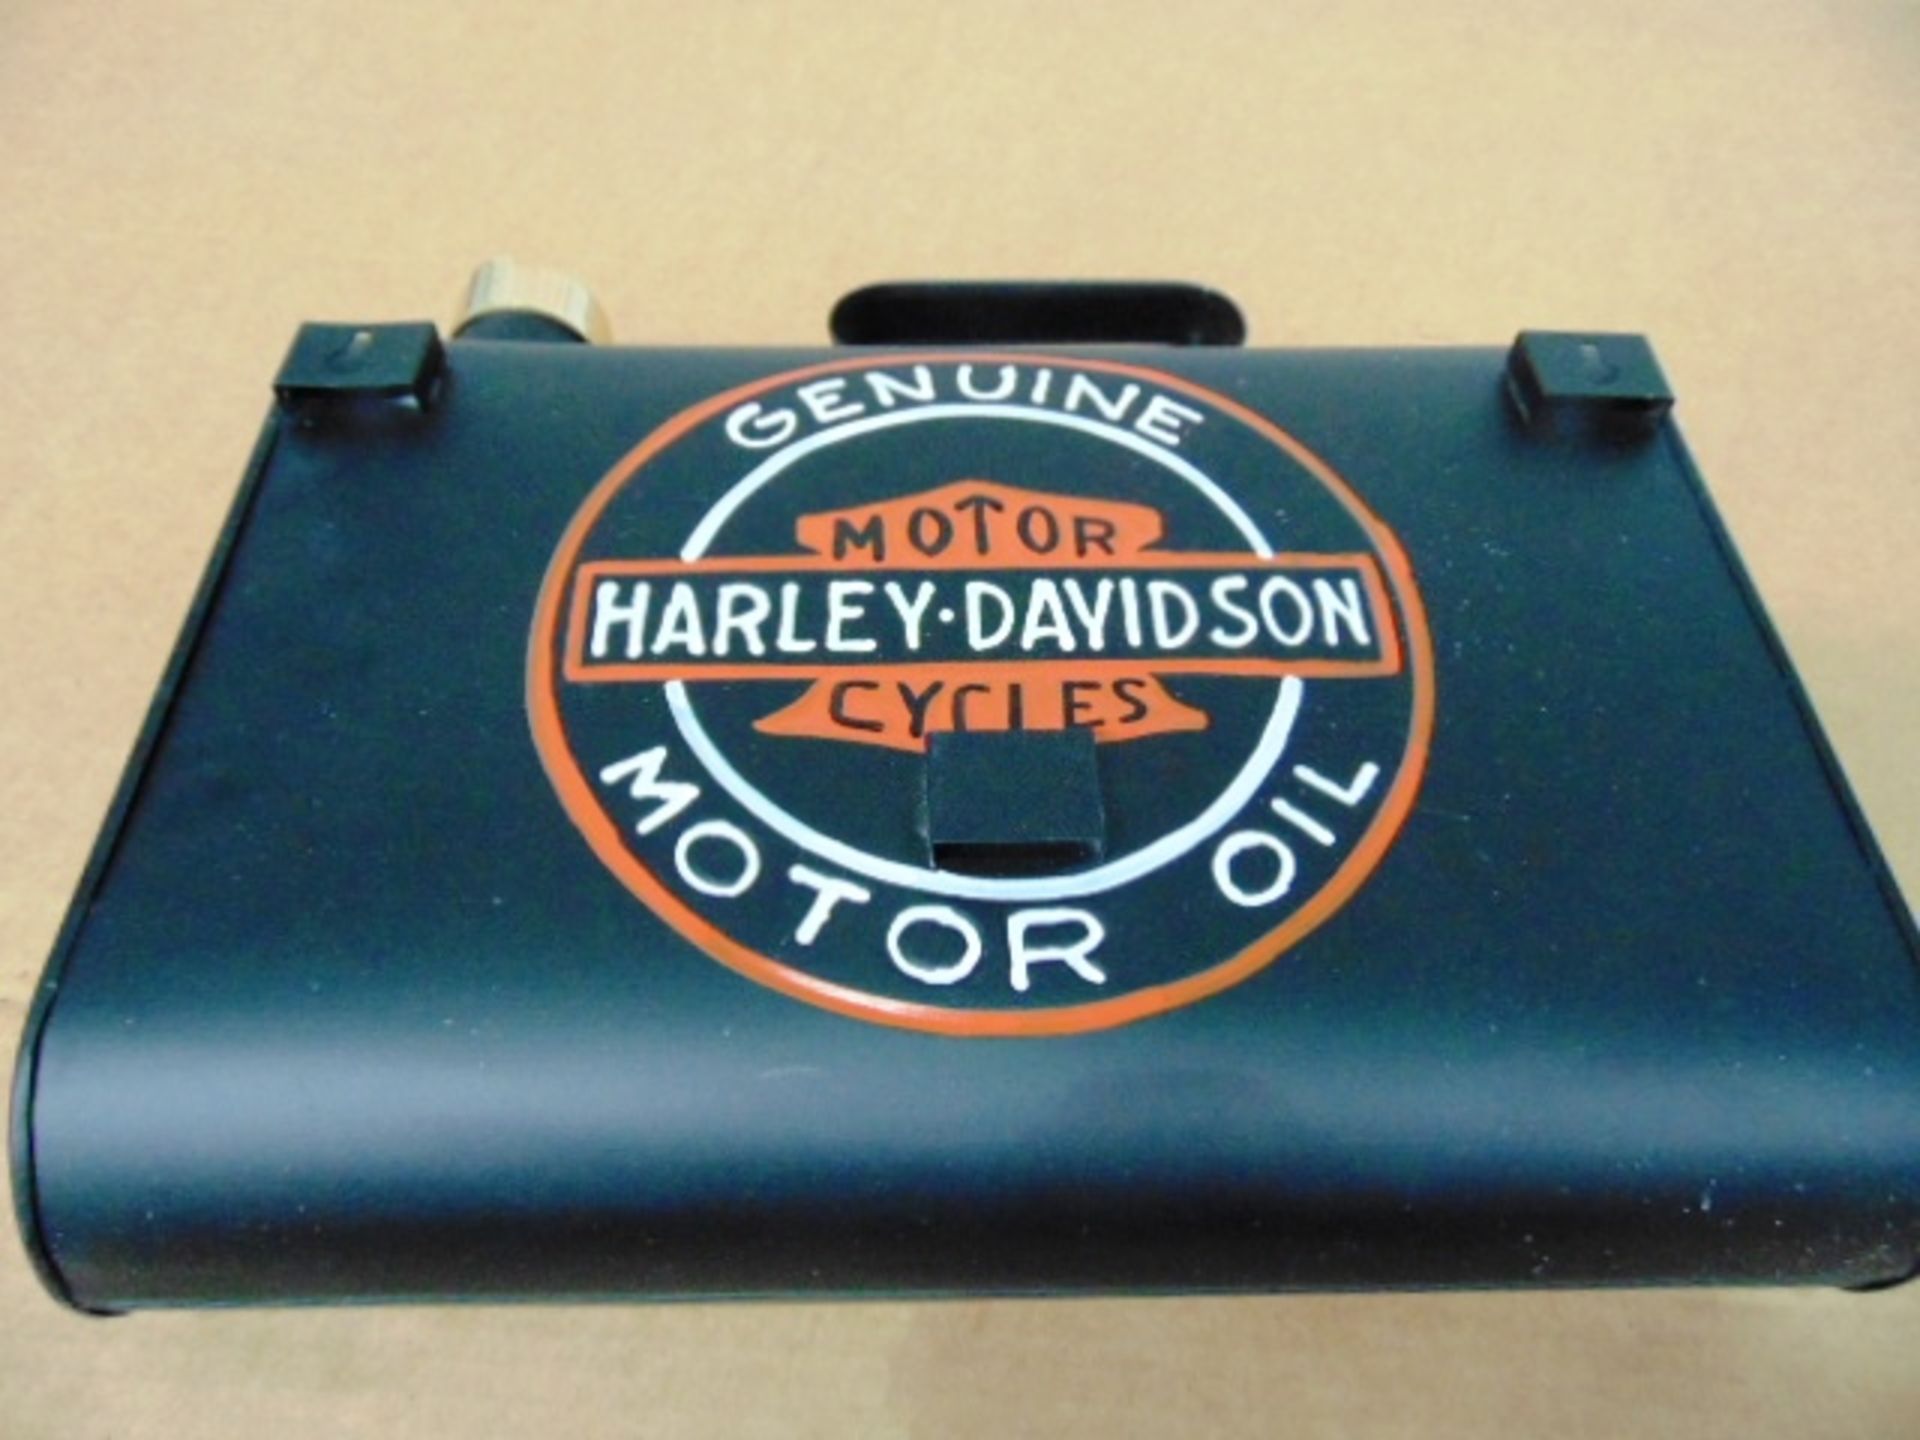 Harley Davidson Branded Slimline Oil Can - Image 4 of 6